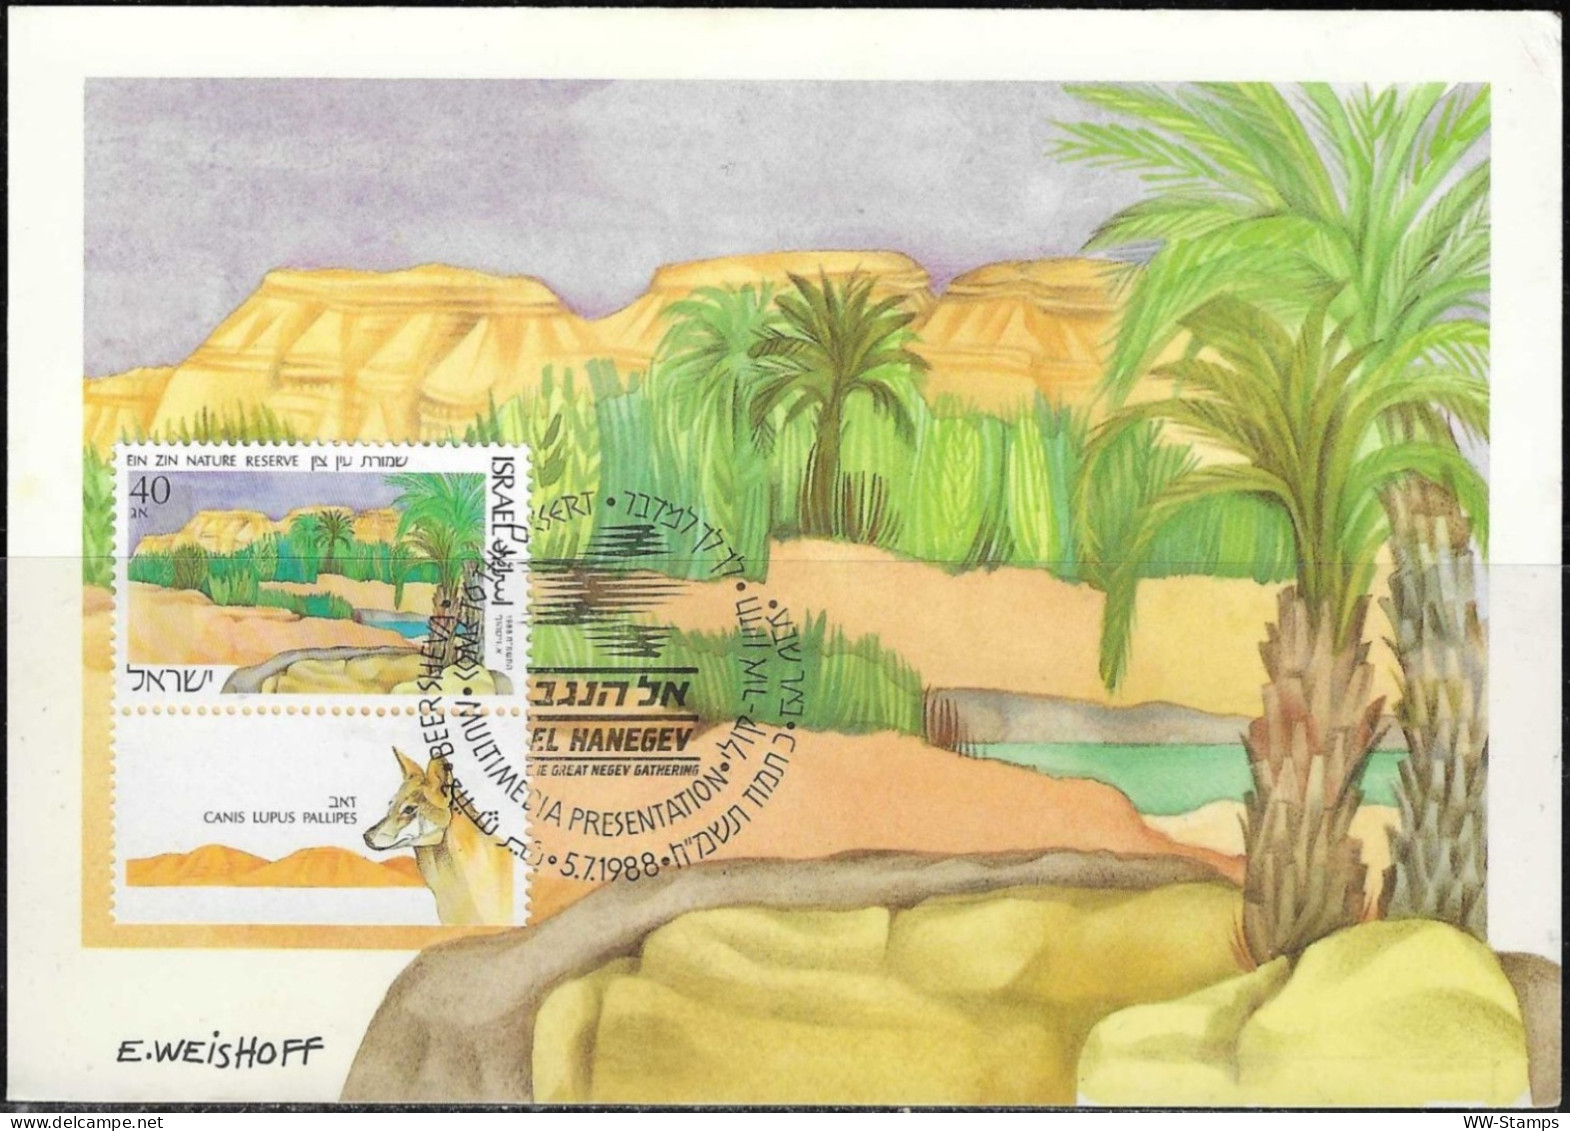 Israel 1988 Maximum Card Ein Zin Nature Reserve In The Negev Lupus [ILT1118] - Maximum Cards